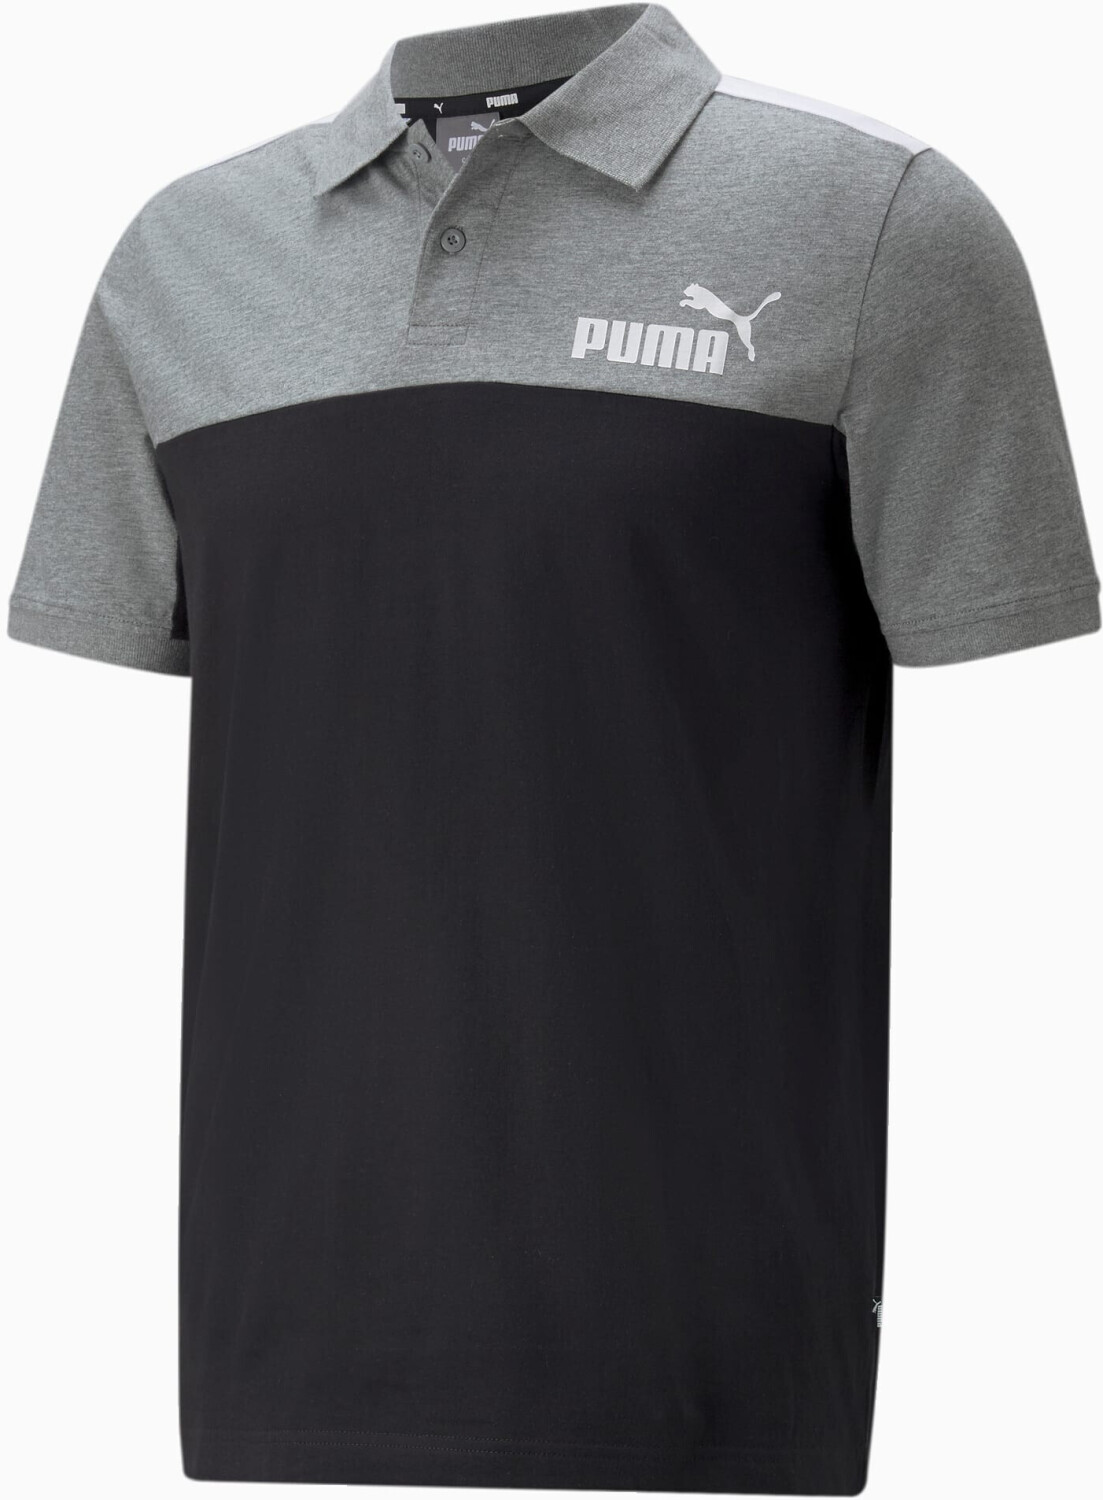 Camiseta Polo Puma Ess Pique Hombre Negra